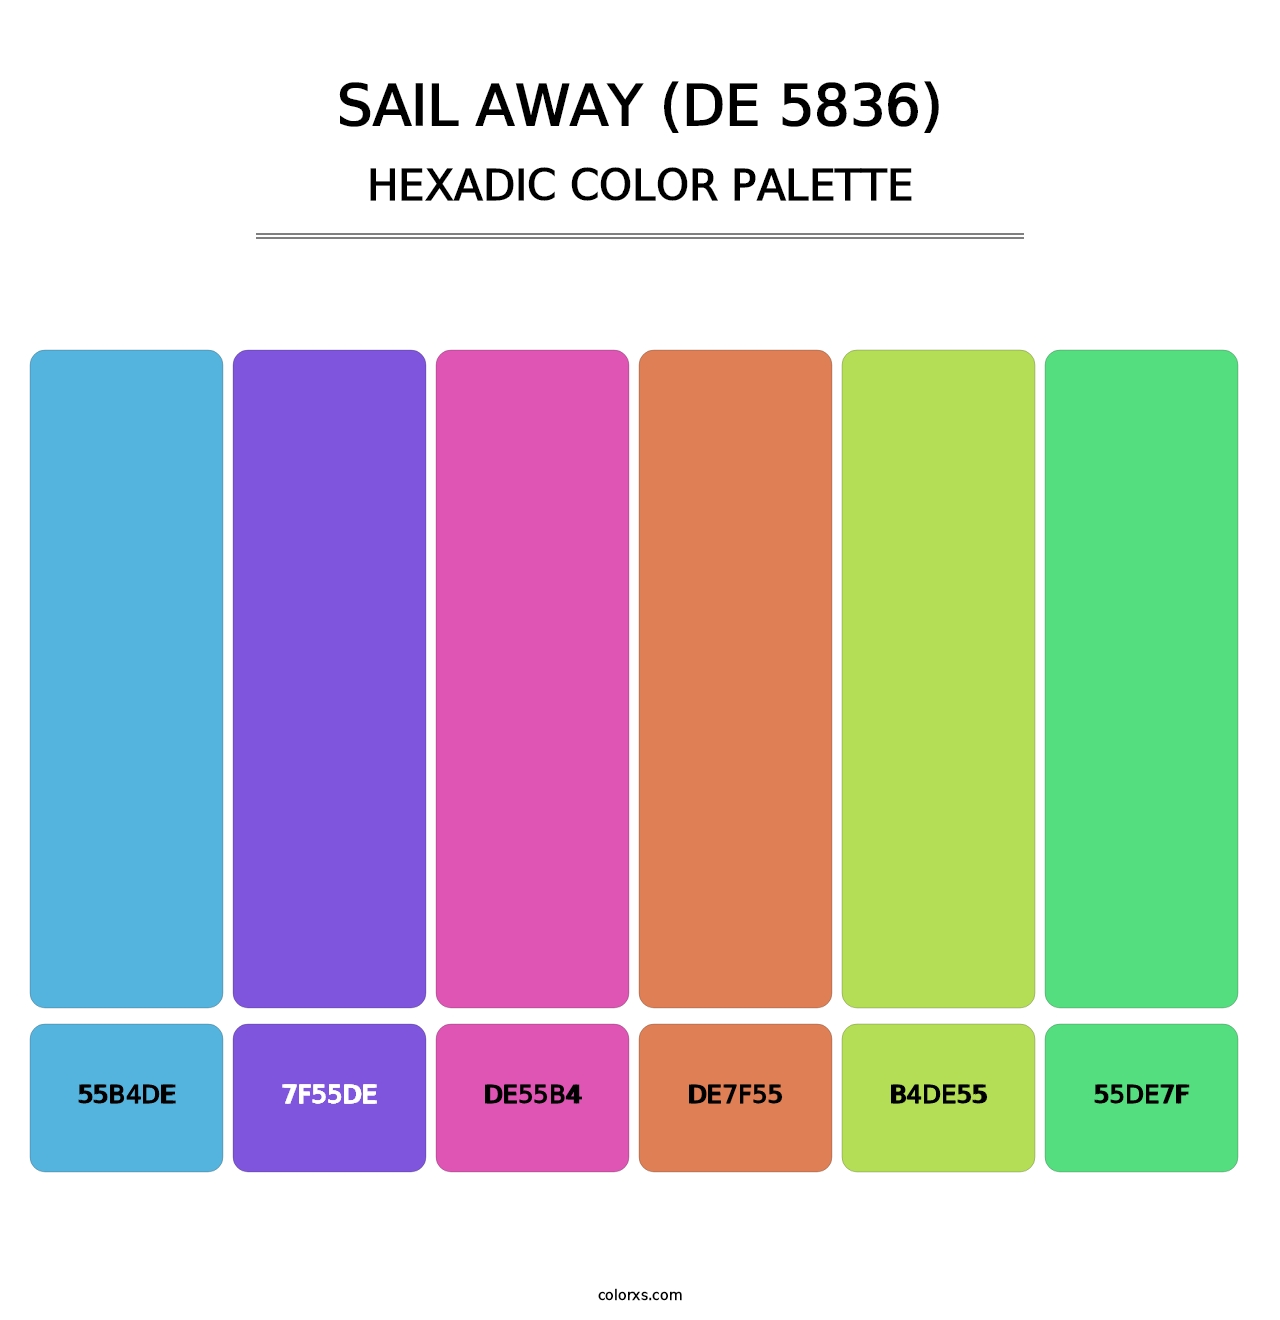 Sail Away (DE 5836) - Hexadic Color Palette